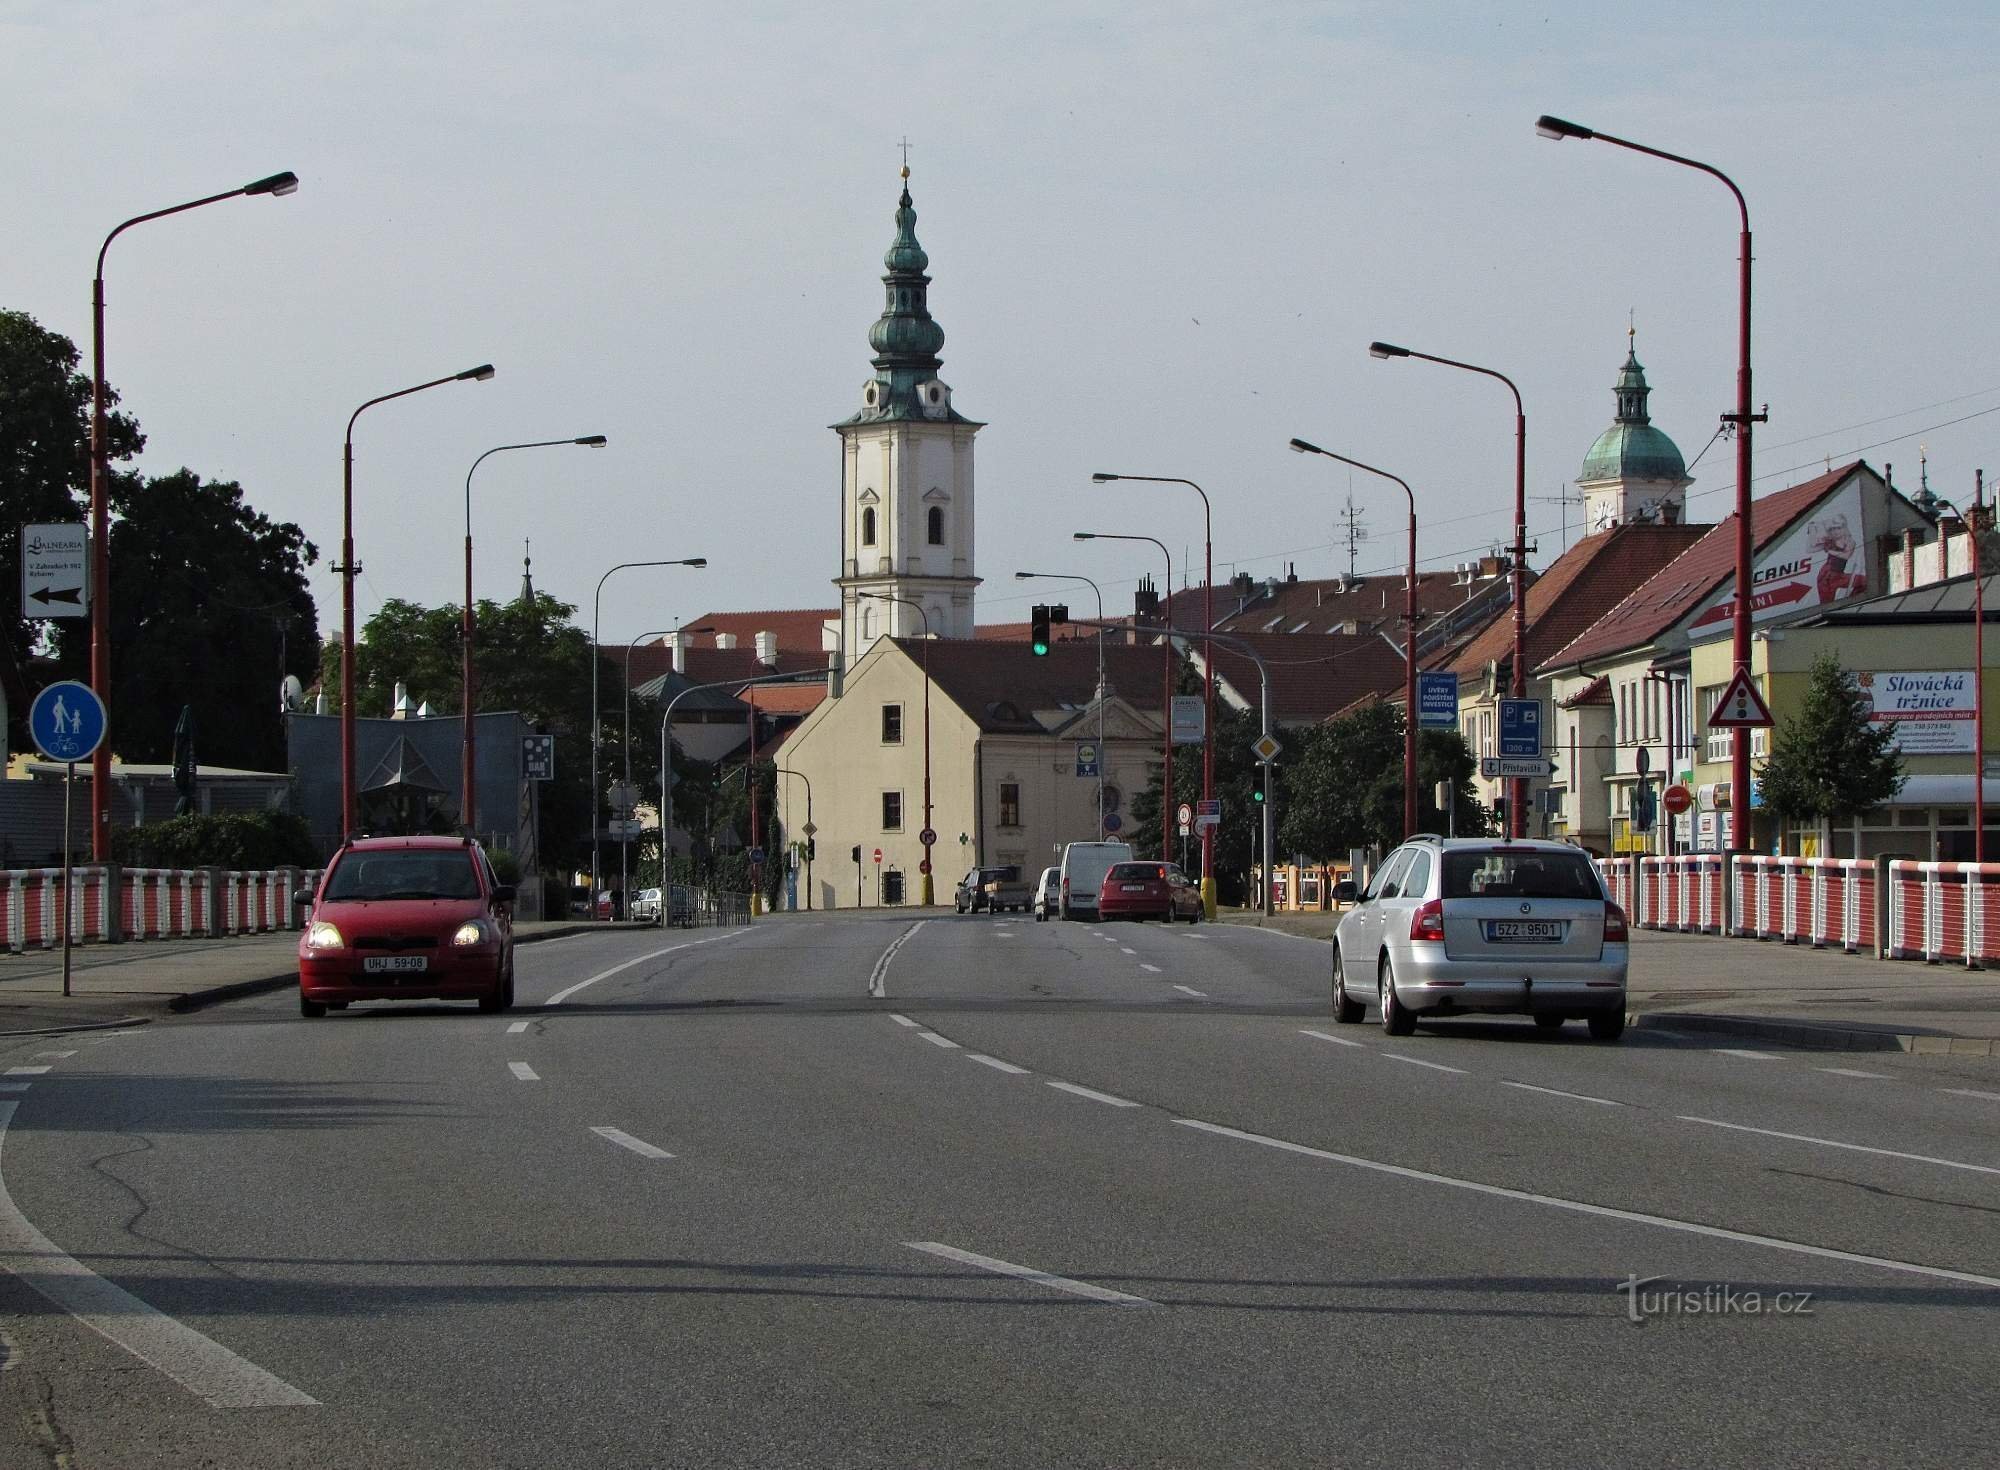 Uherské Hradiště - Gelände des Franziskanerklosters und der Kirche